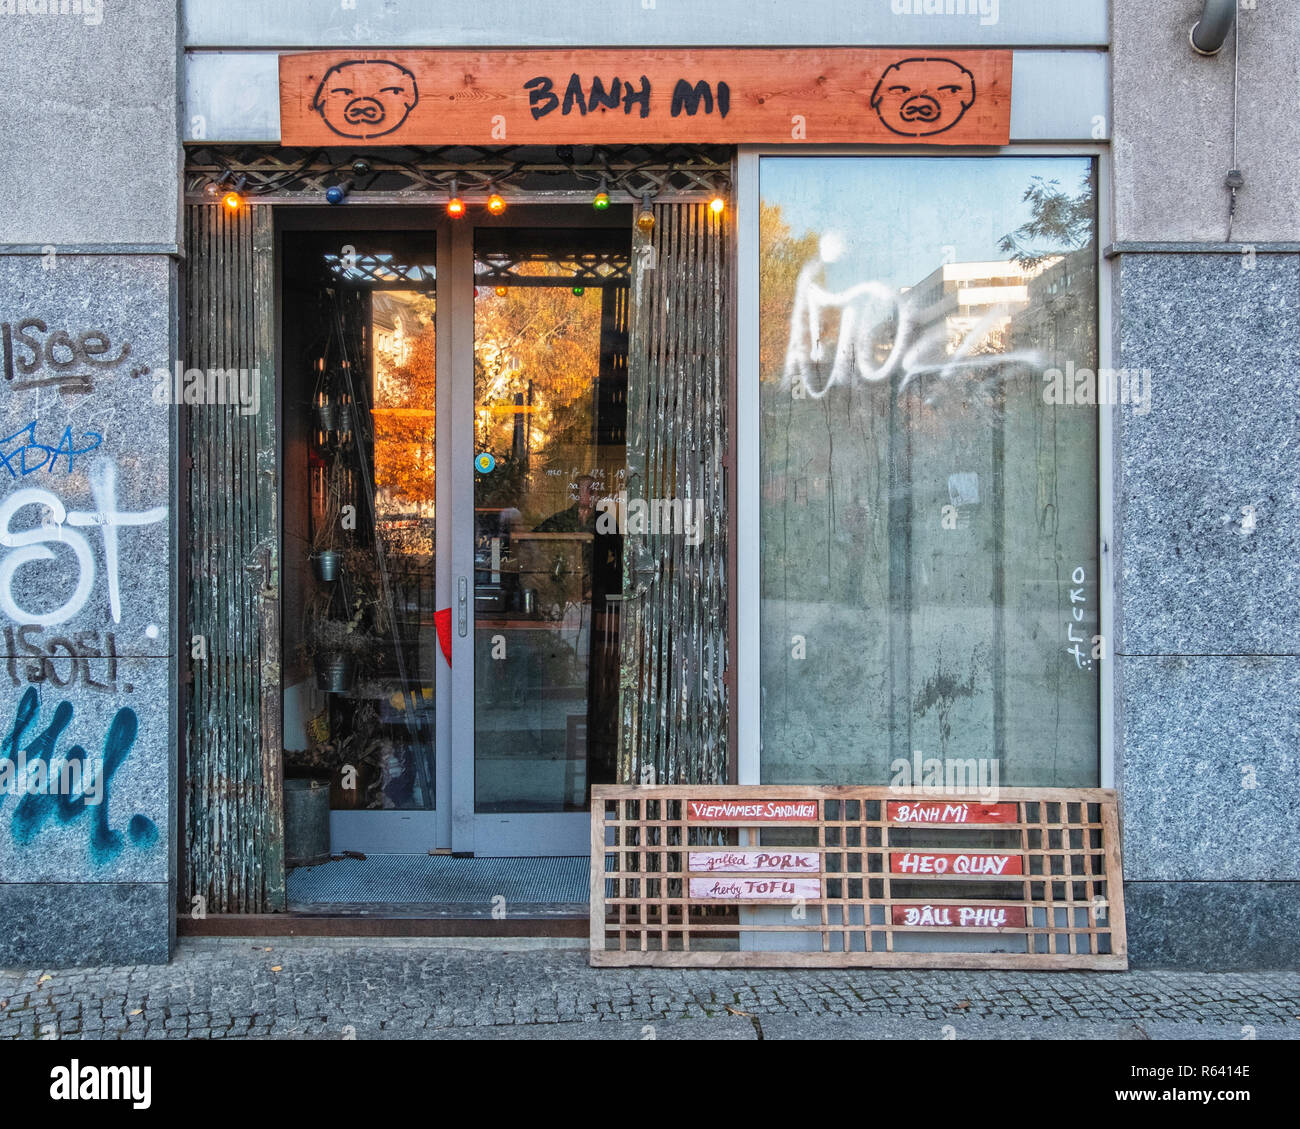 Berlin,Mitte, Max Beer strasse 50. Bahn Mi Vietnamese sandwich shop exterior Stock Photo